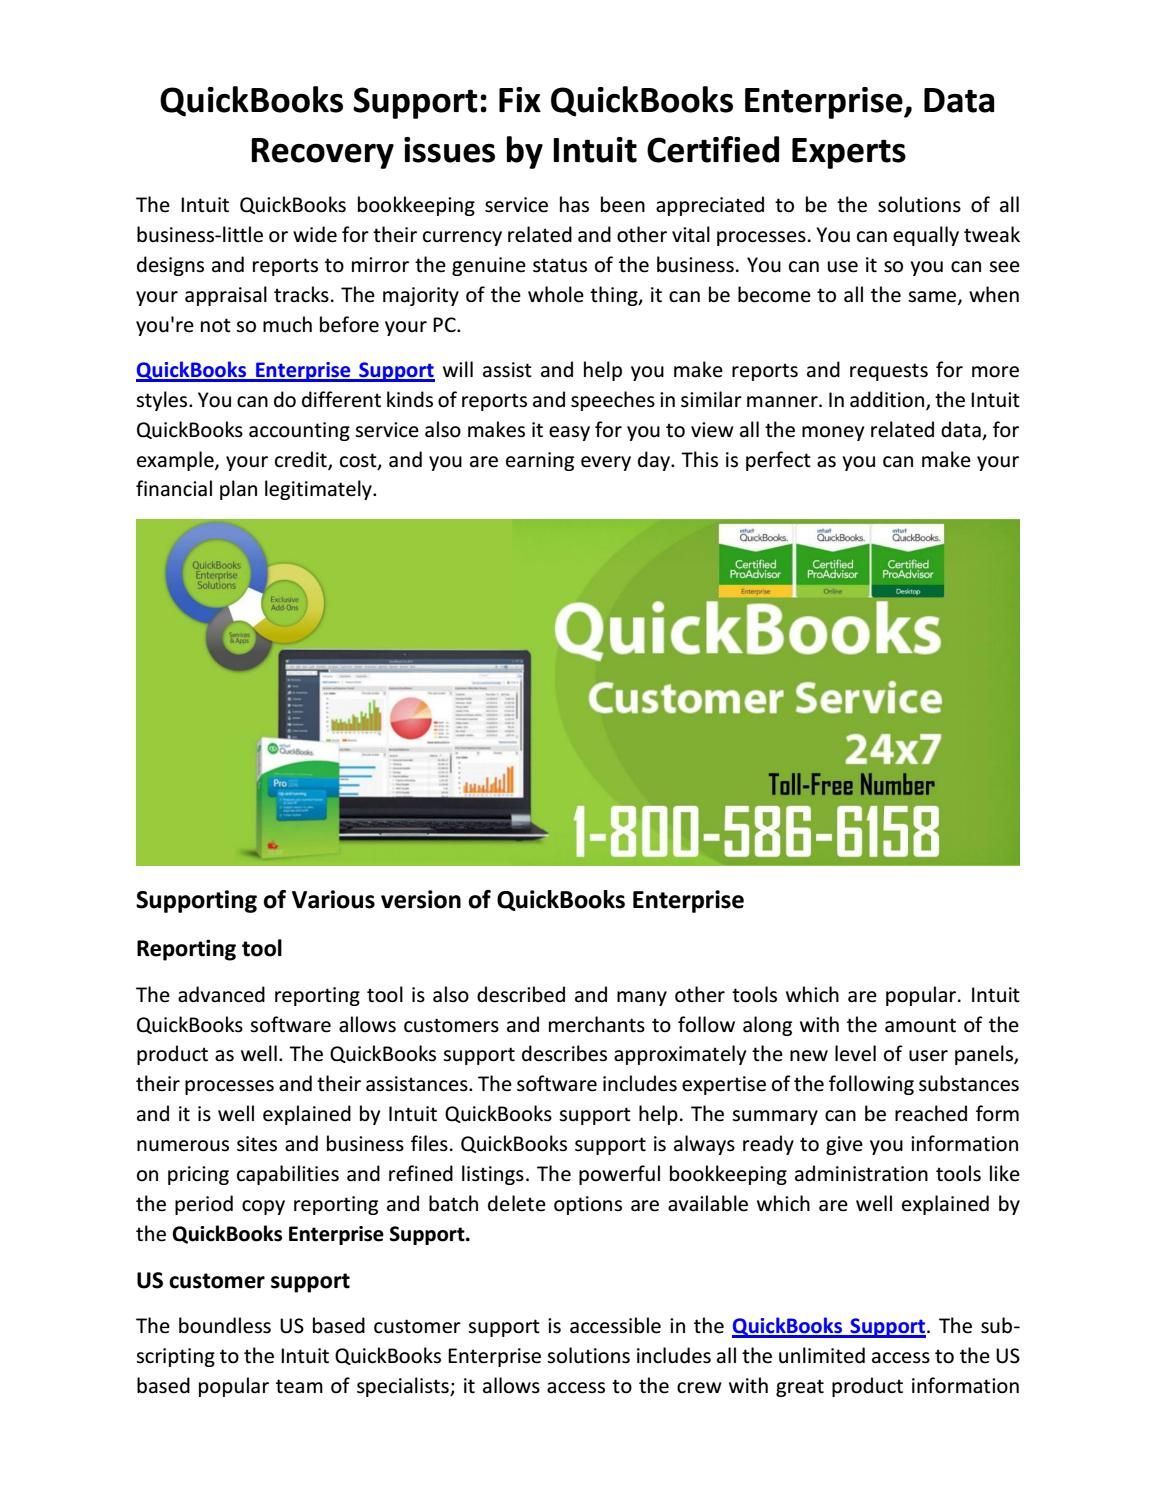 Quickbooks enterprise issues